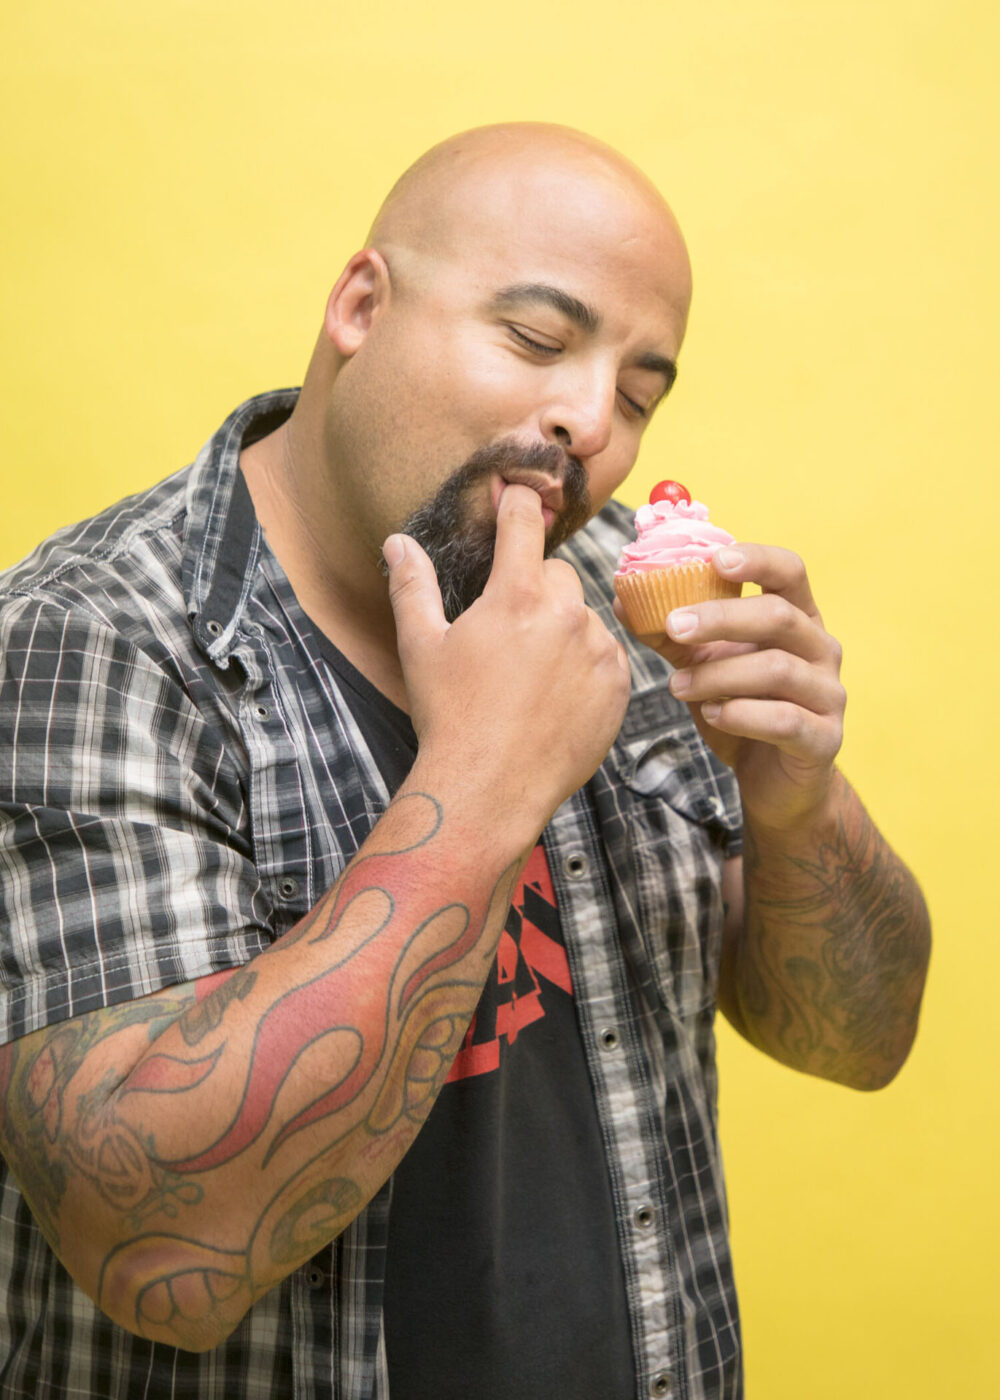 man eats cupcake